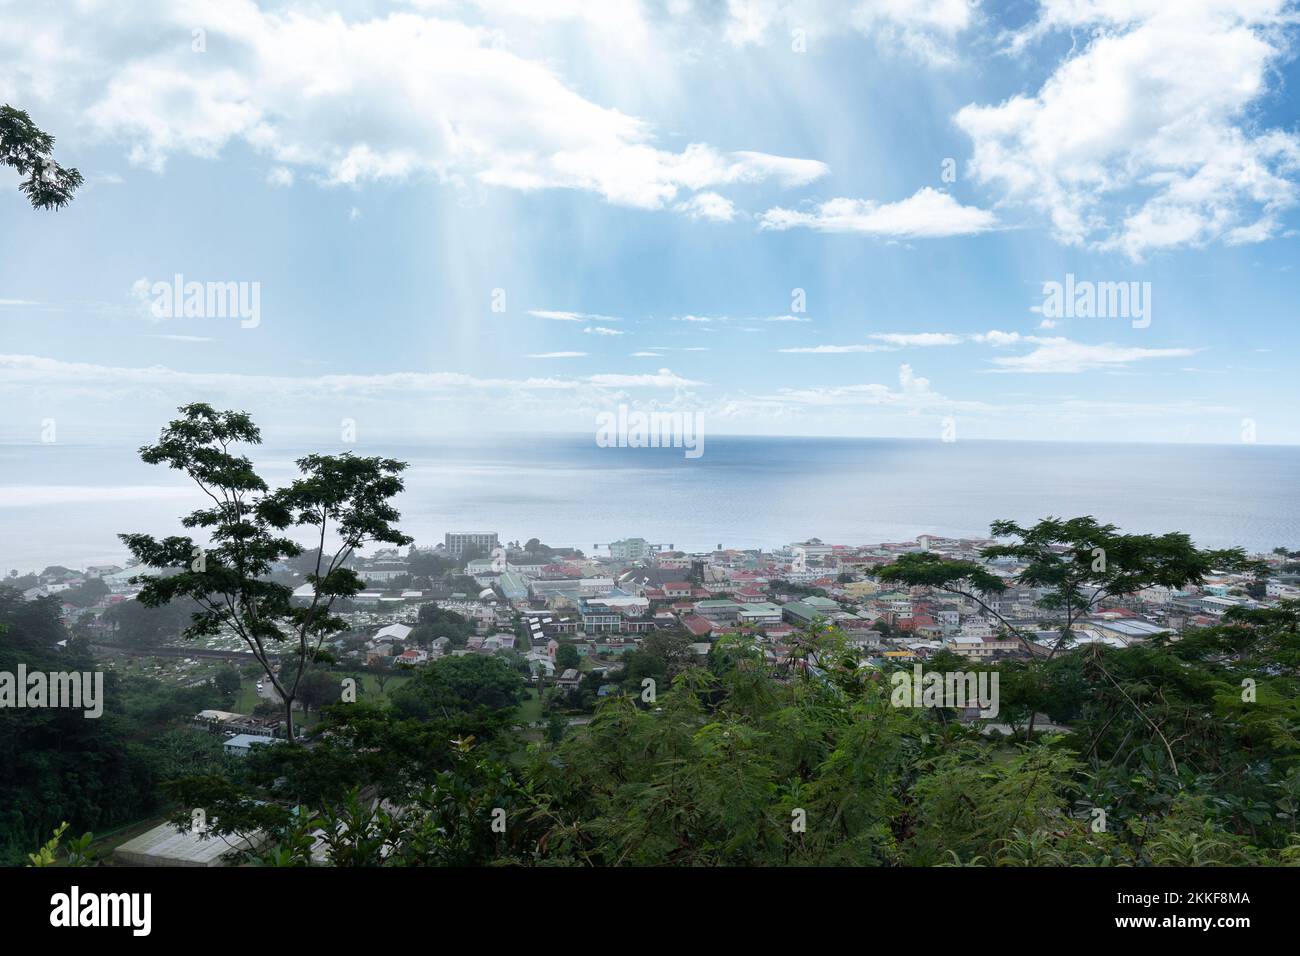 Ville côtière des Caraïbes de Roseau en Dominique, avec accès à la mer des Caraïbes Banque D'Images